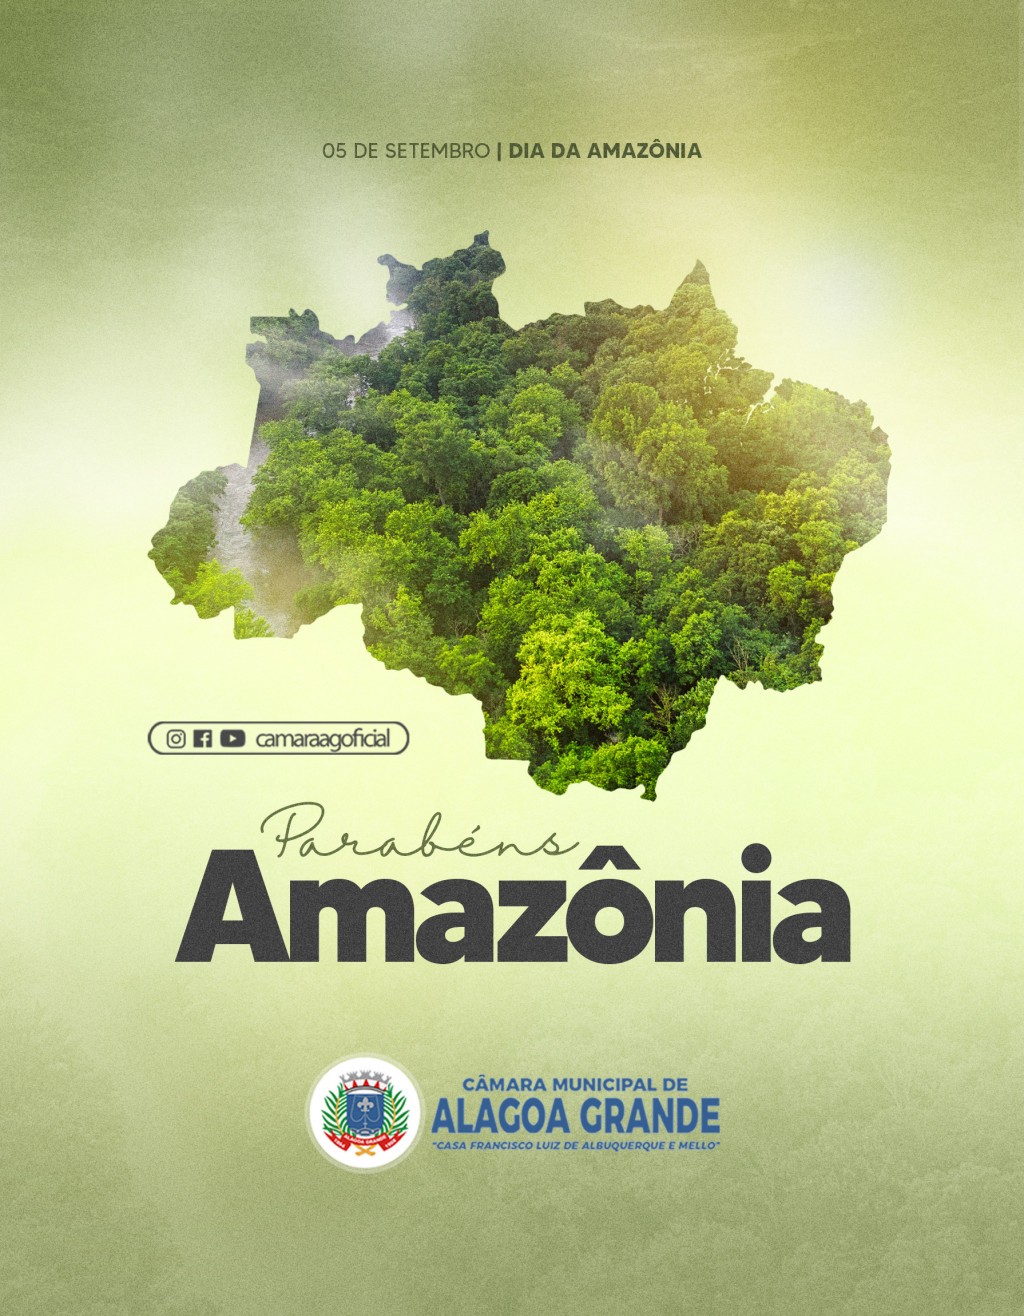 Dia da Amazônia